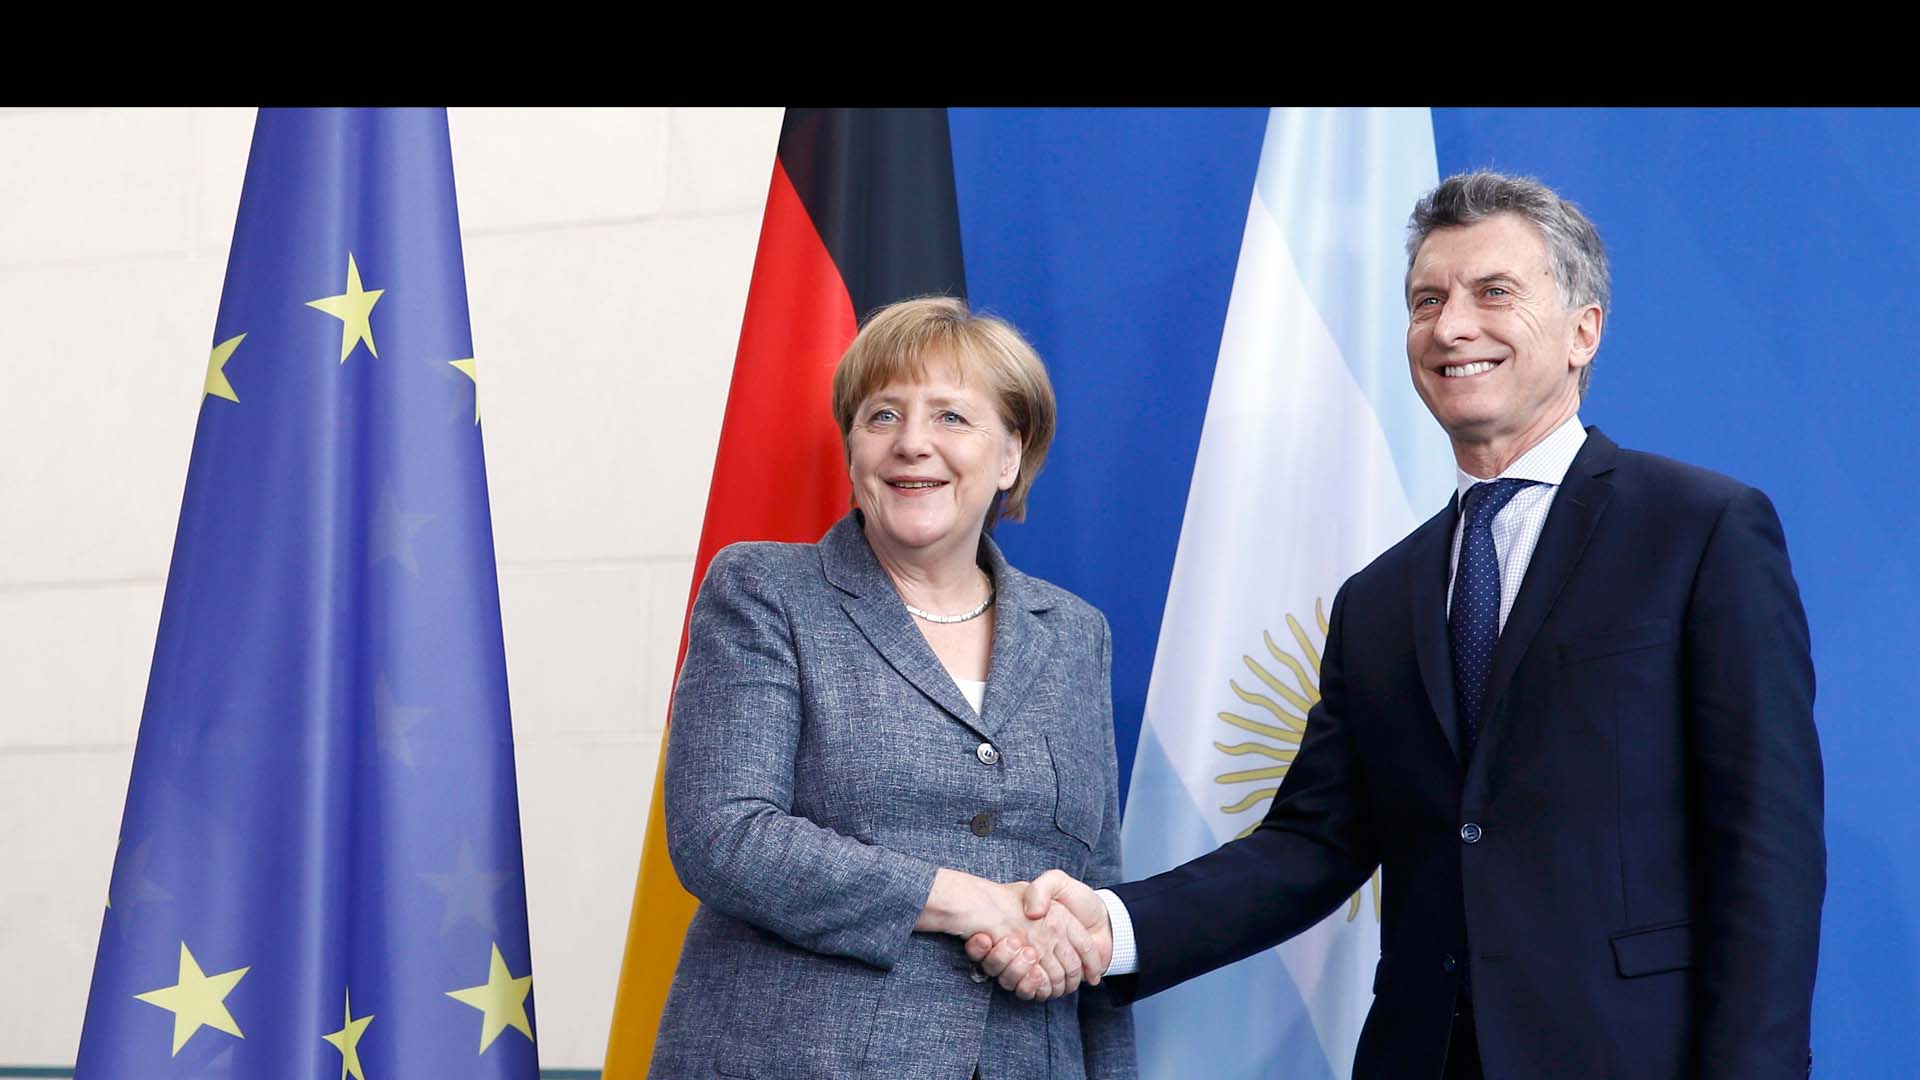 La jefa de Gobierno alemán aseguró que su país tiene intereses en colaborar con la estructuración socio-económica de Argentina